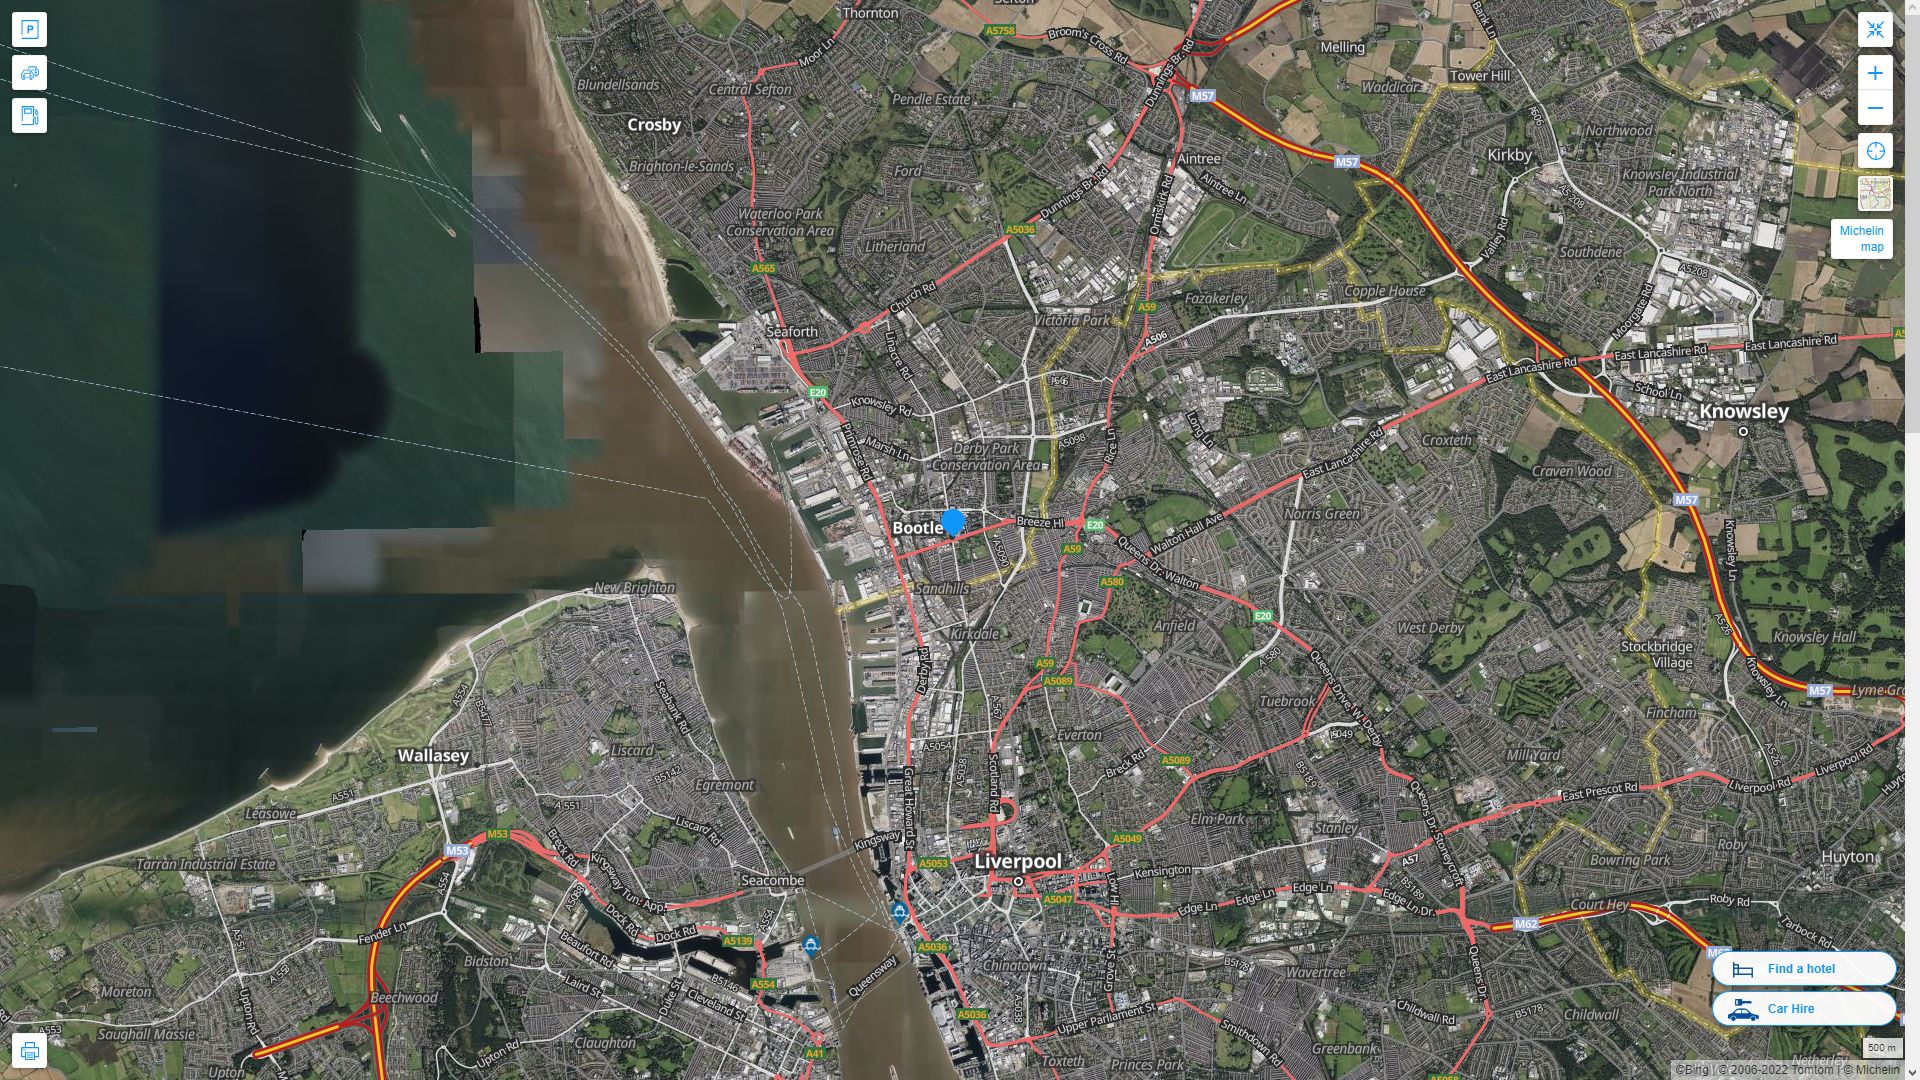 Bootle Royaume Uni Autoroute et carte routiere avec vue satellite